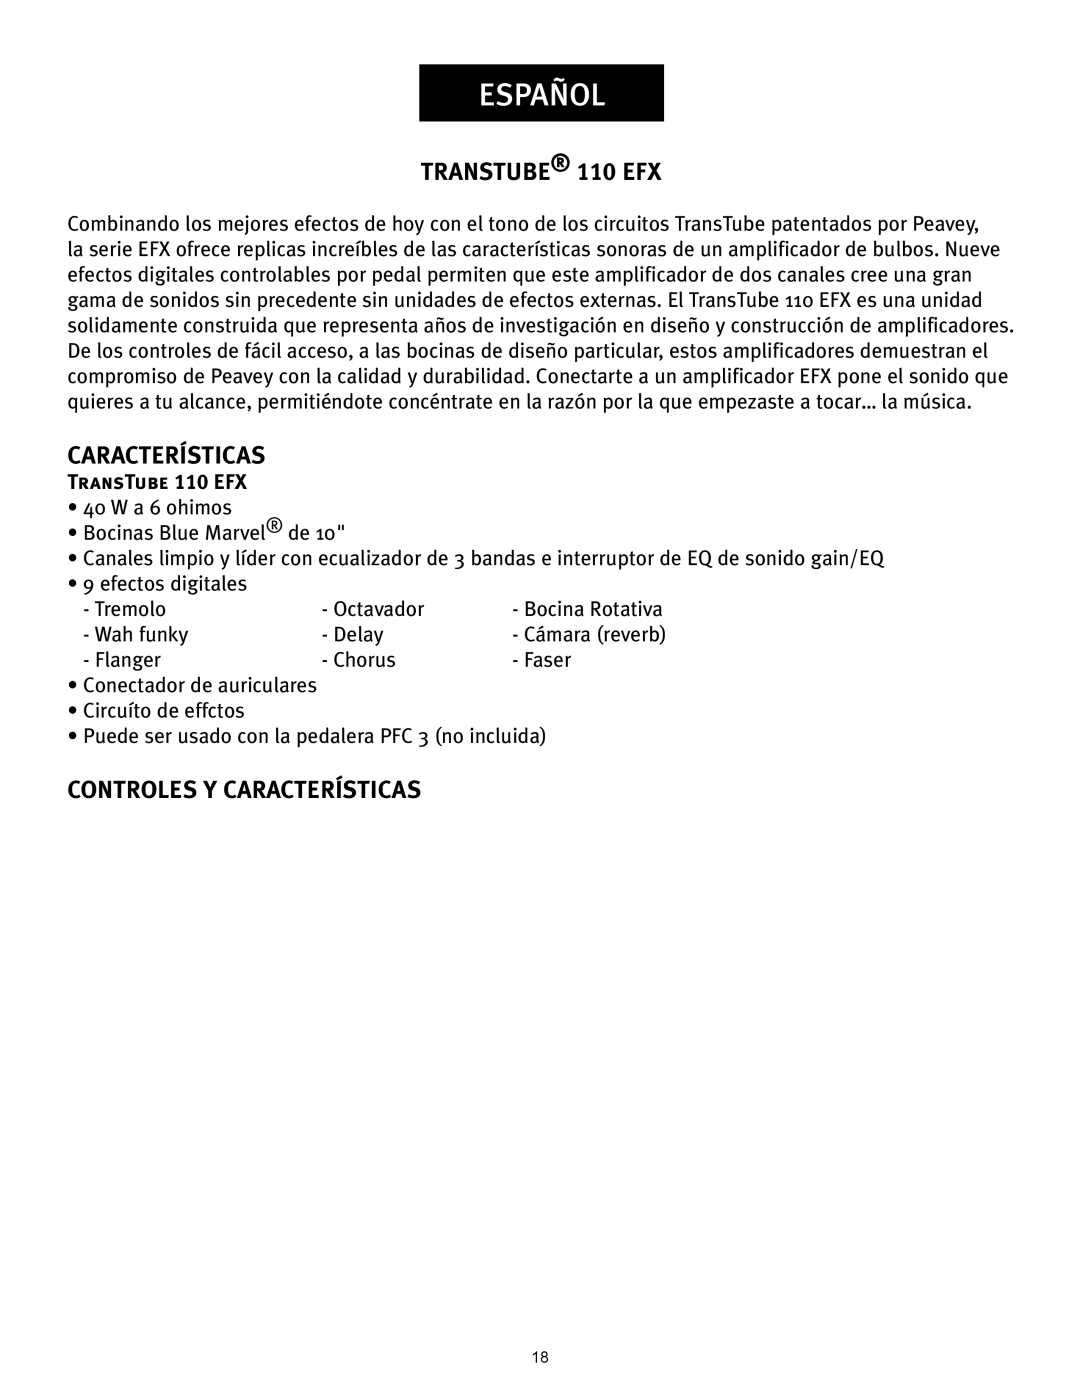 Peavey operation manual Español, Controles Y Características, TRANSTUBE 110 EFX 